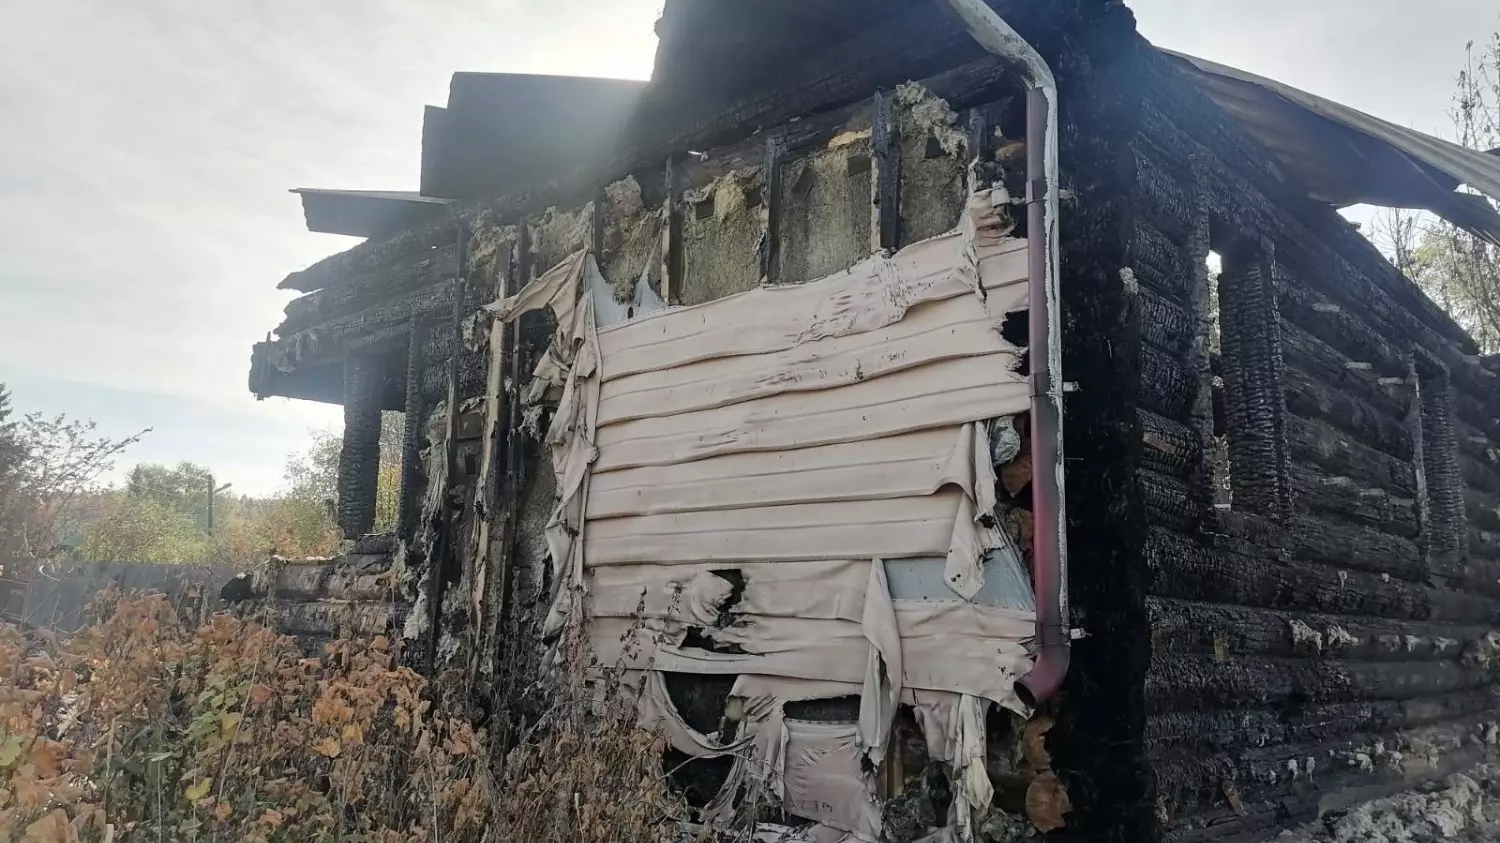 Жители Мулянки сразу говорили про поджоги. После 8 пожара их услышали